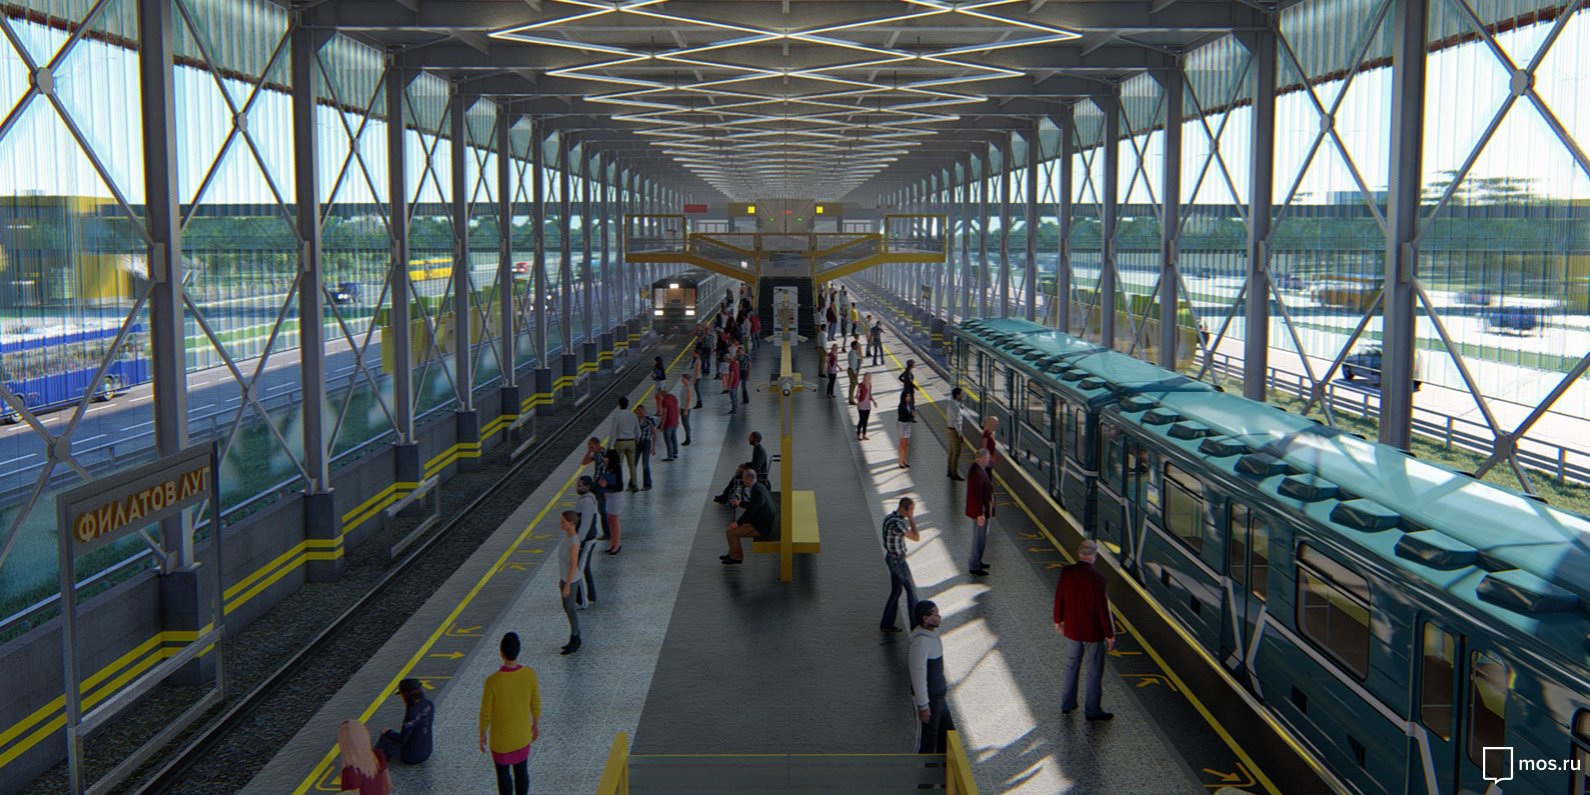 Около 20 станций метрополитена построят в Новой Москве к 2025 году. Фото: сайт мэра Москвы